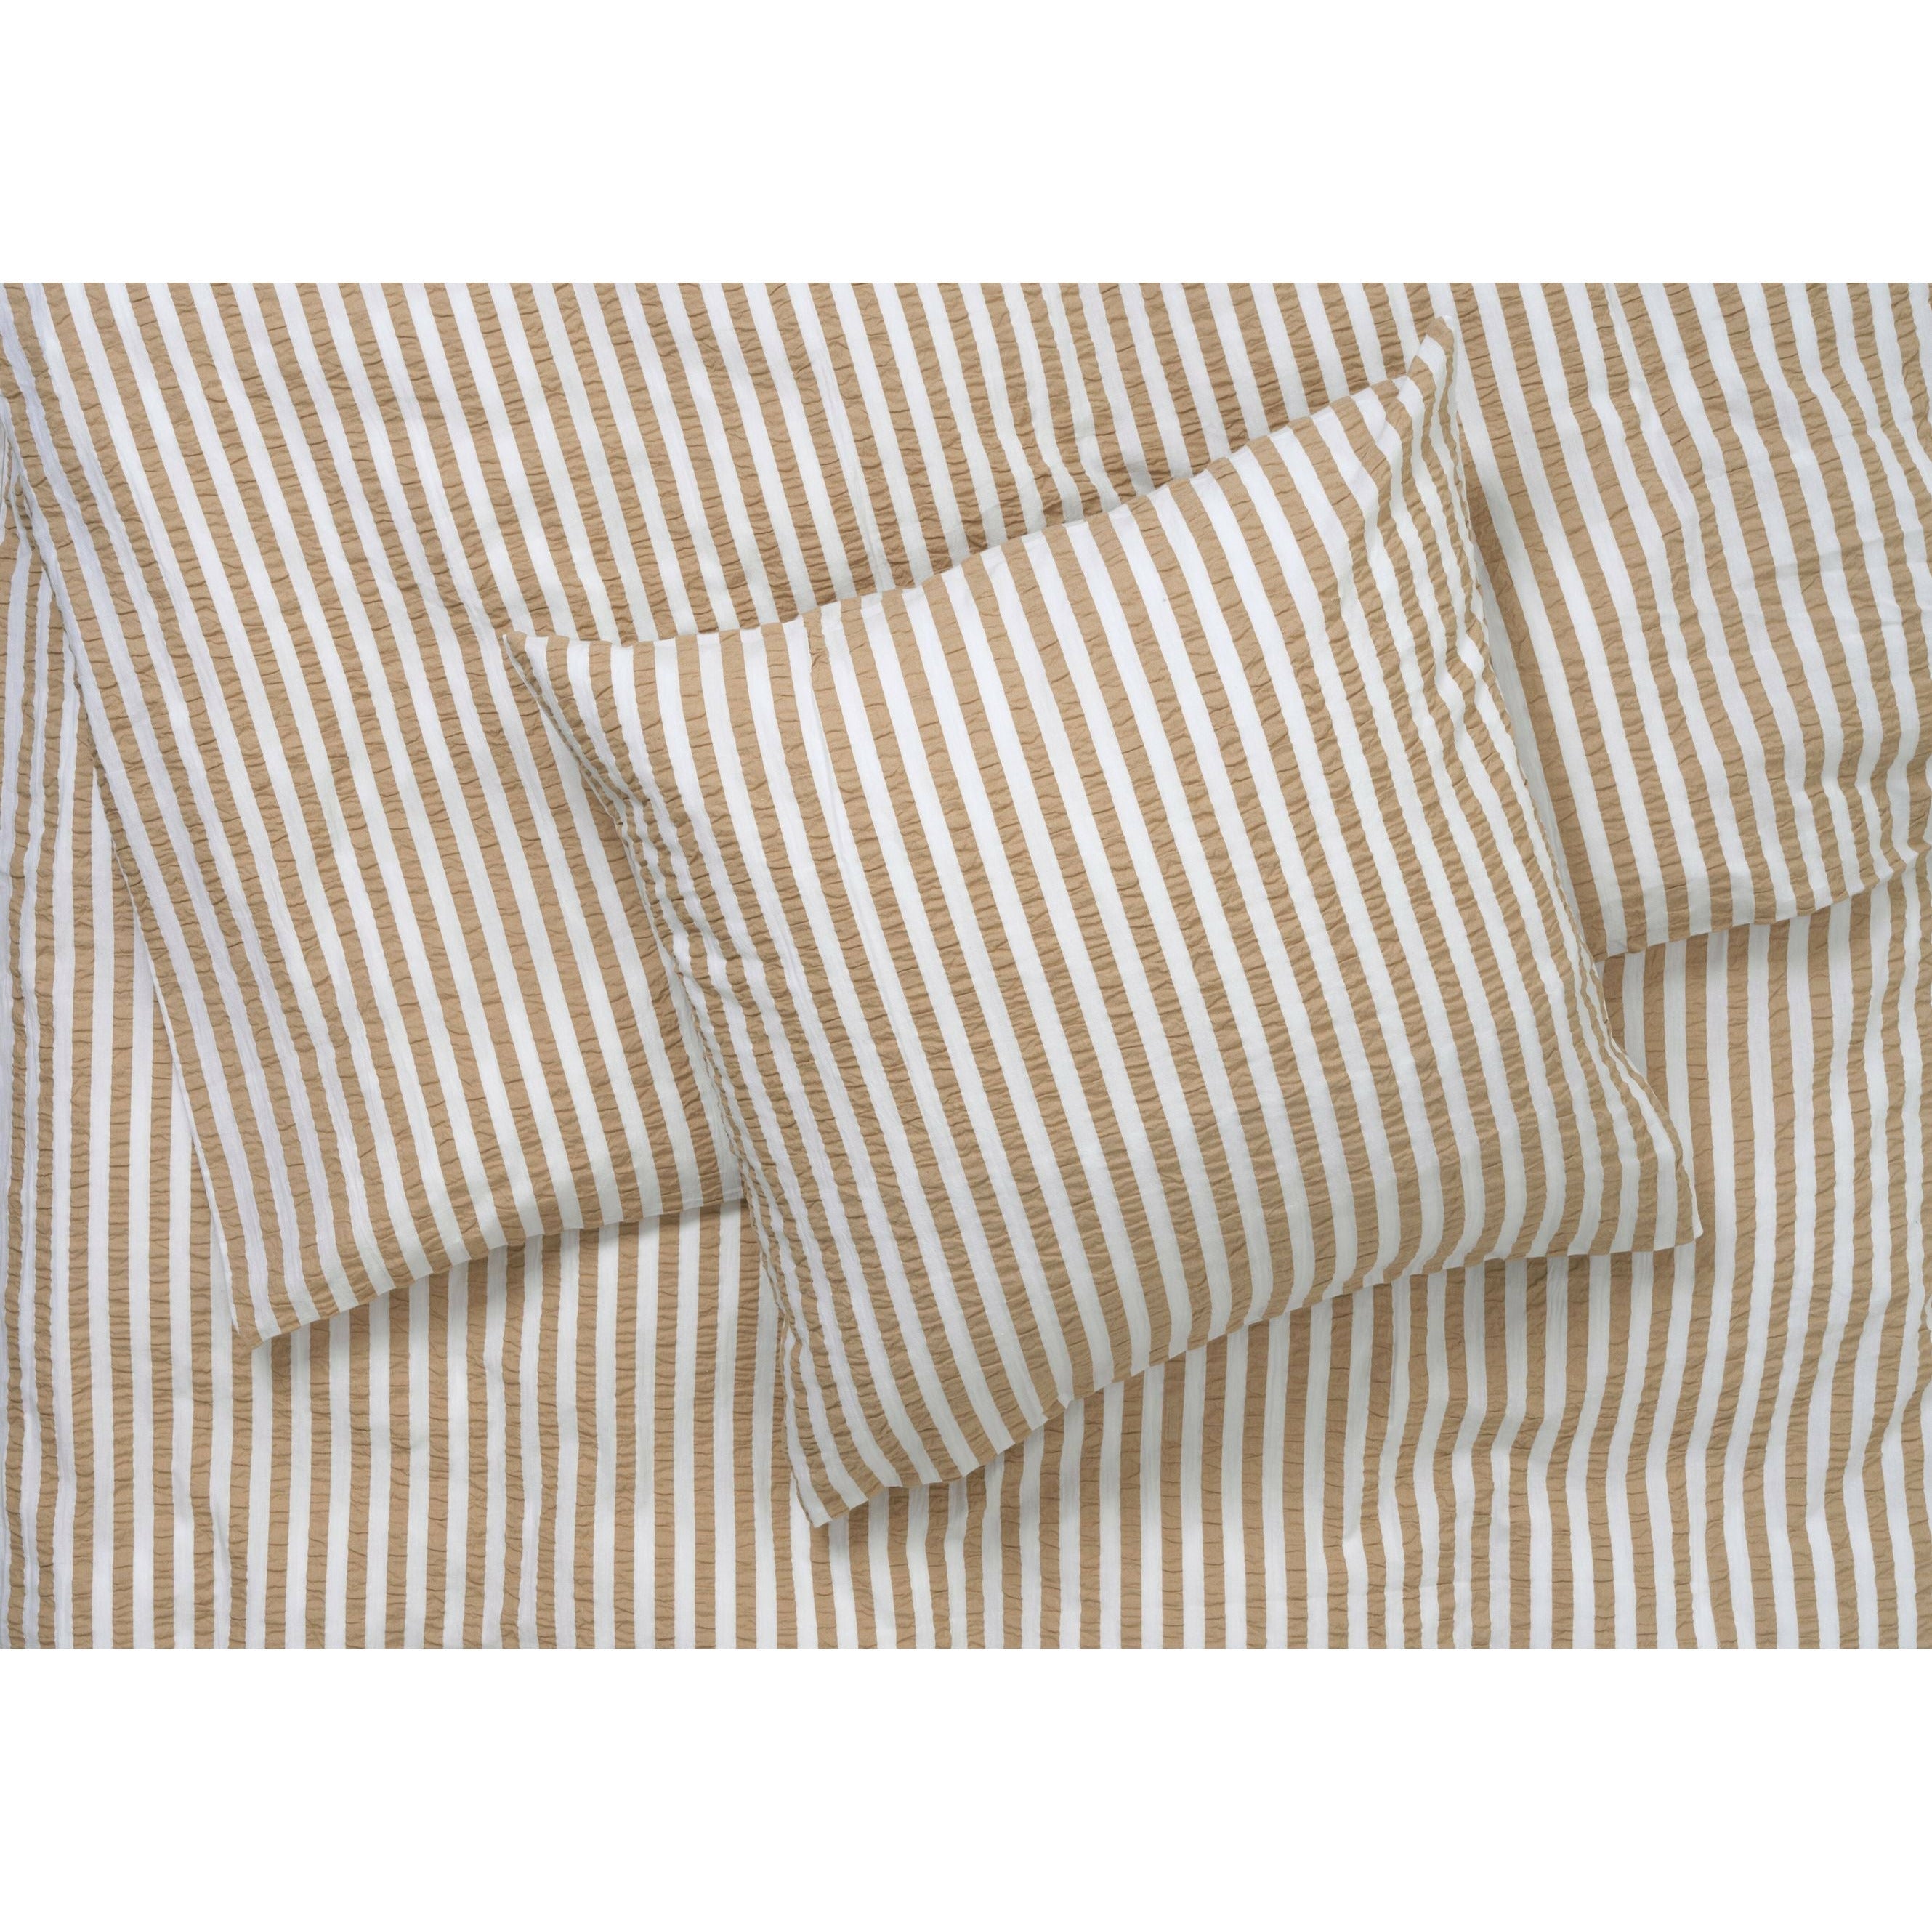 Juna Bæk & Bølge linjer sengelinned 140x220 cm, sand/hvid